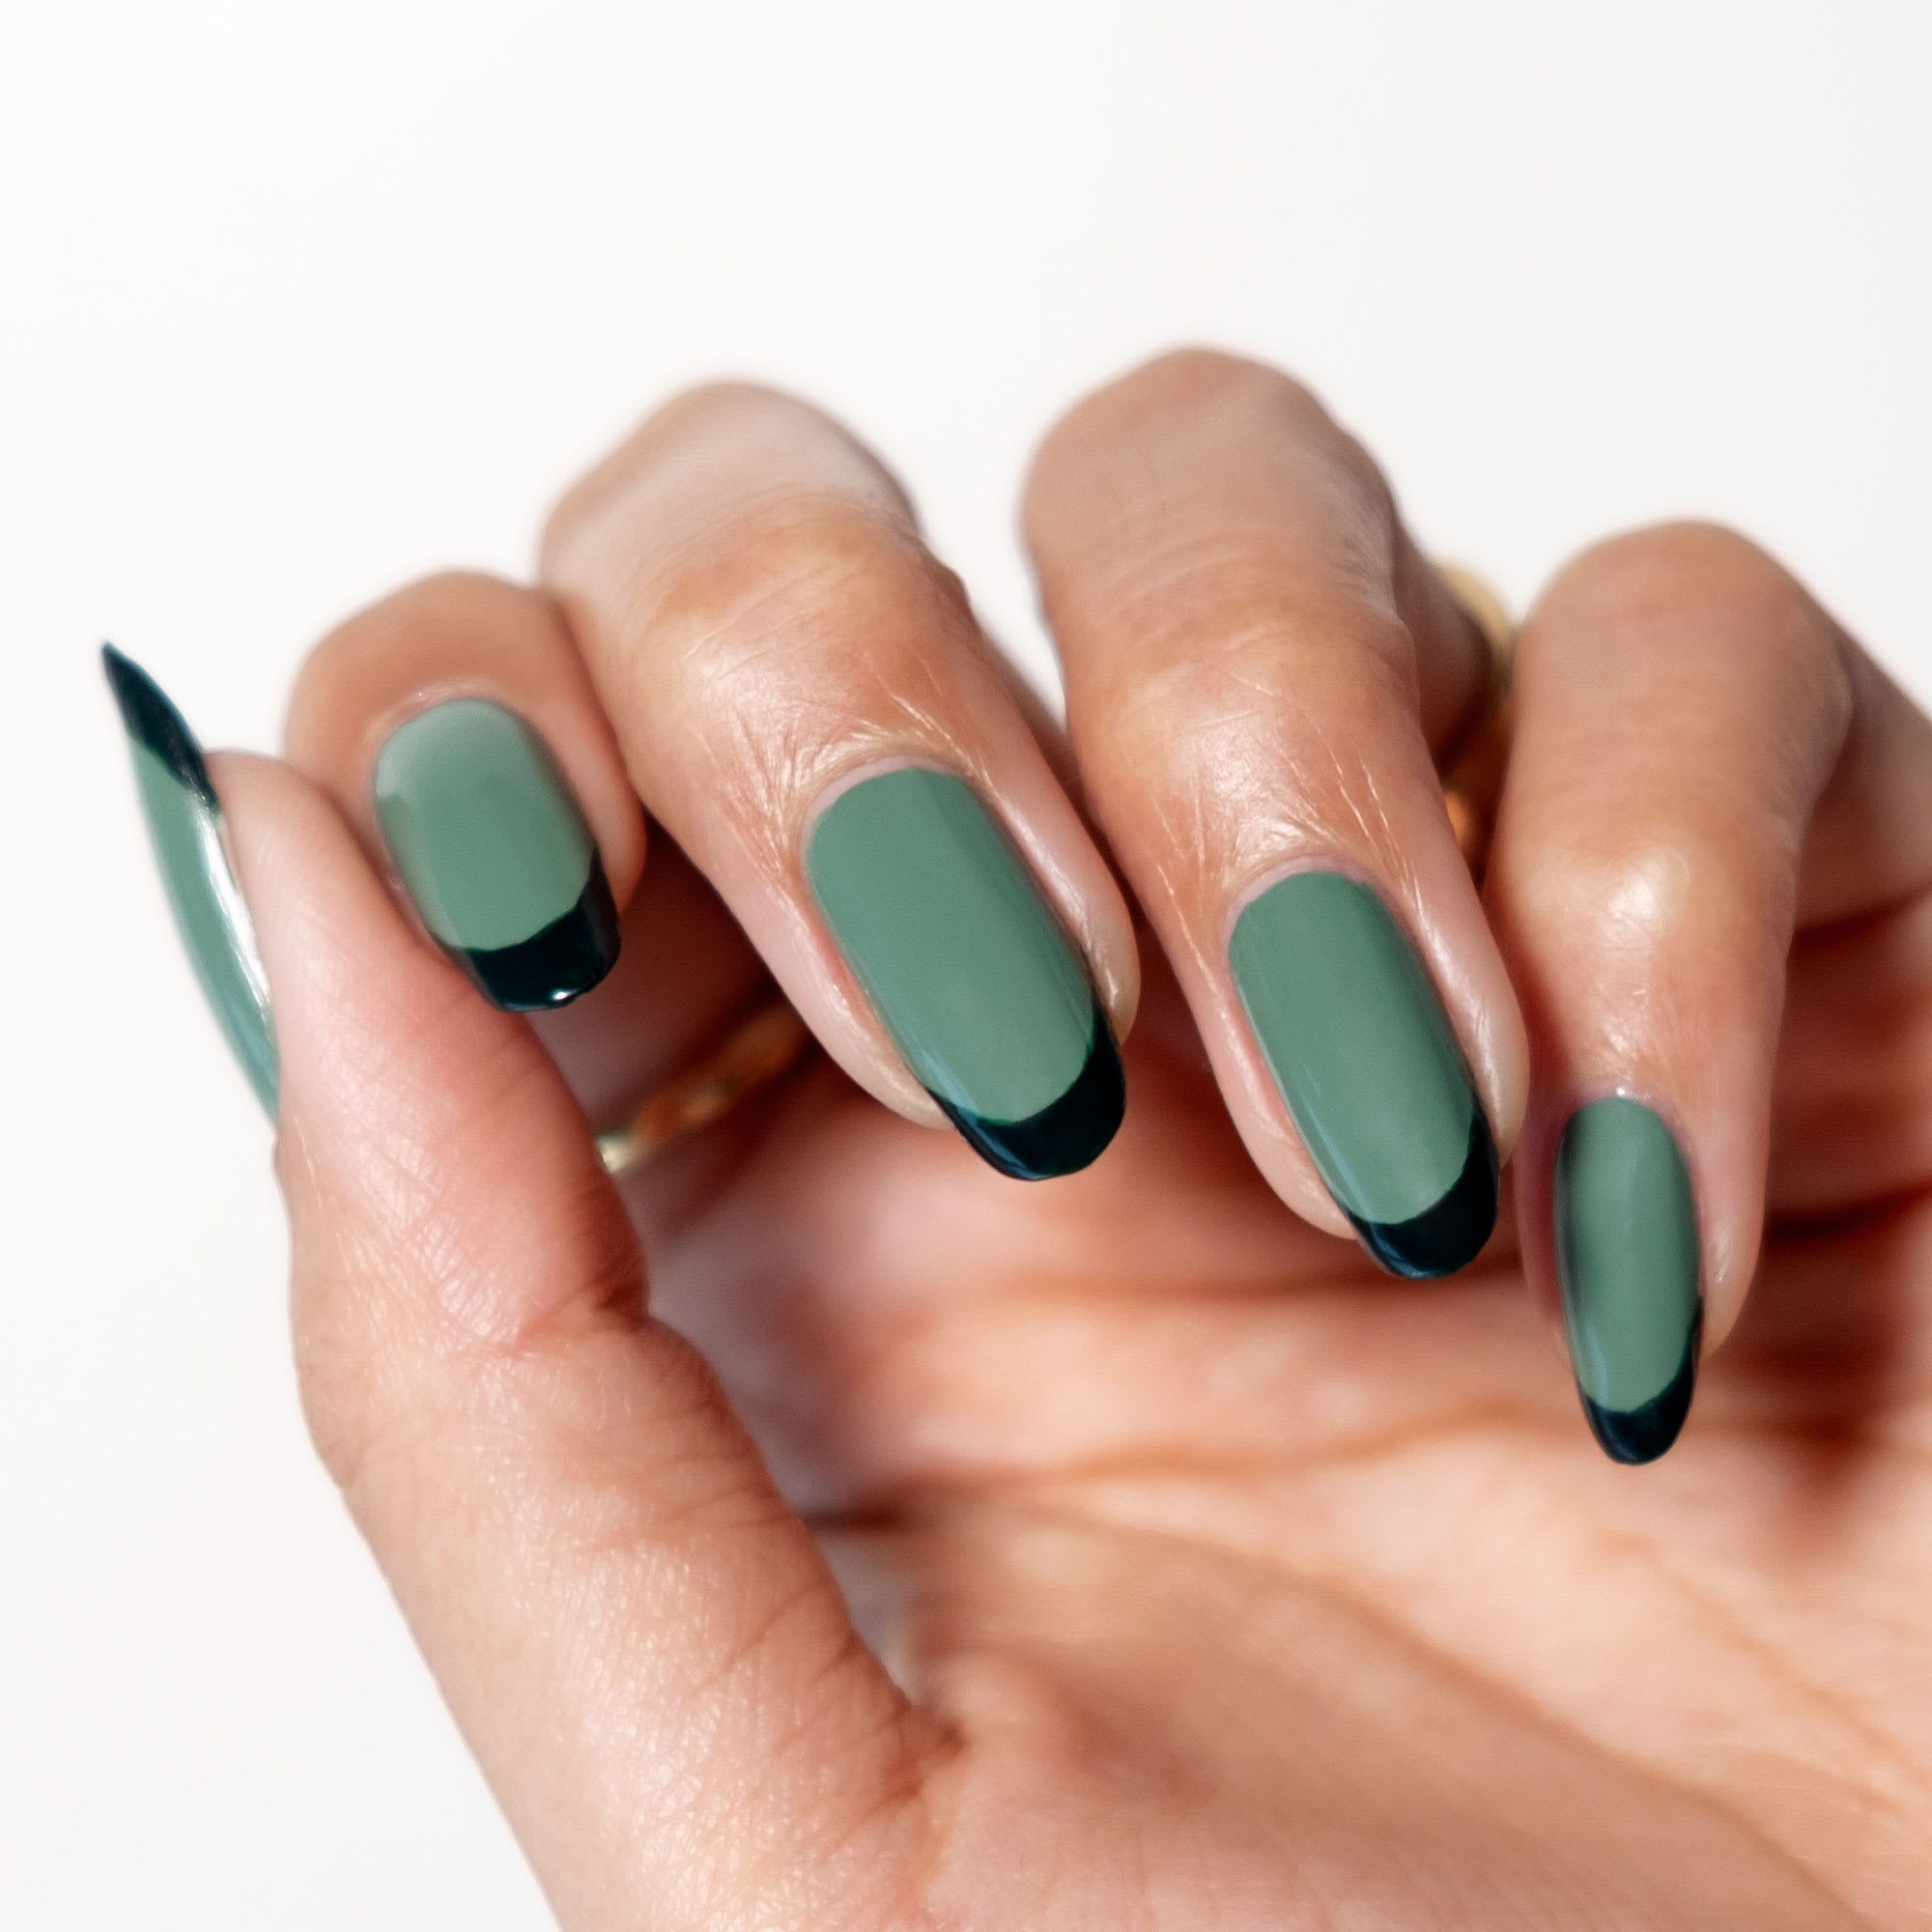 different shades of green | Nail colors, Green nails, Nails